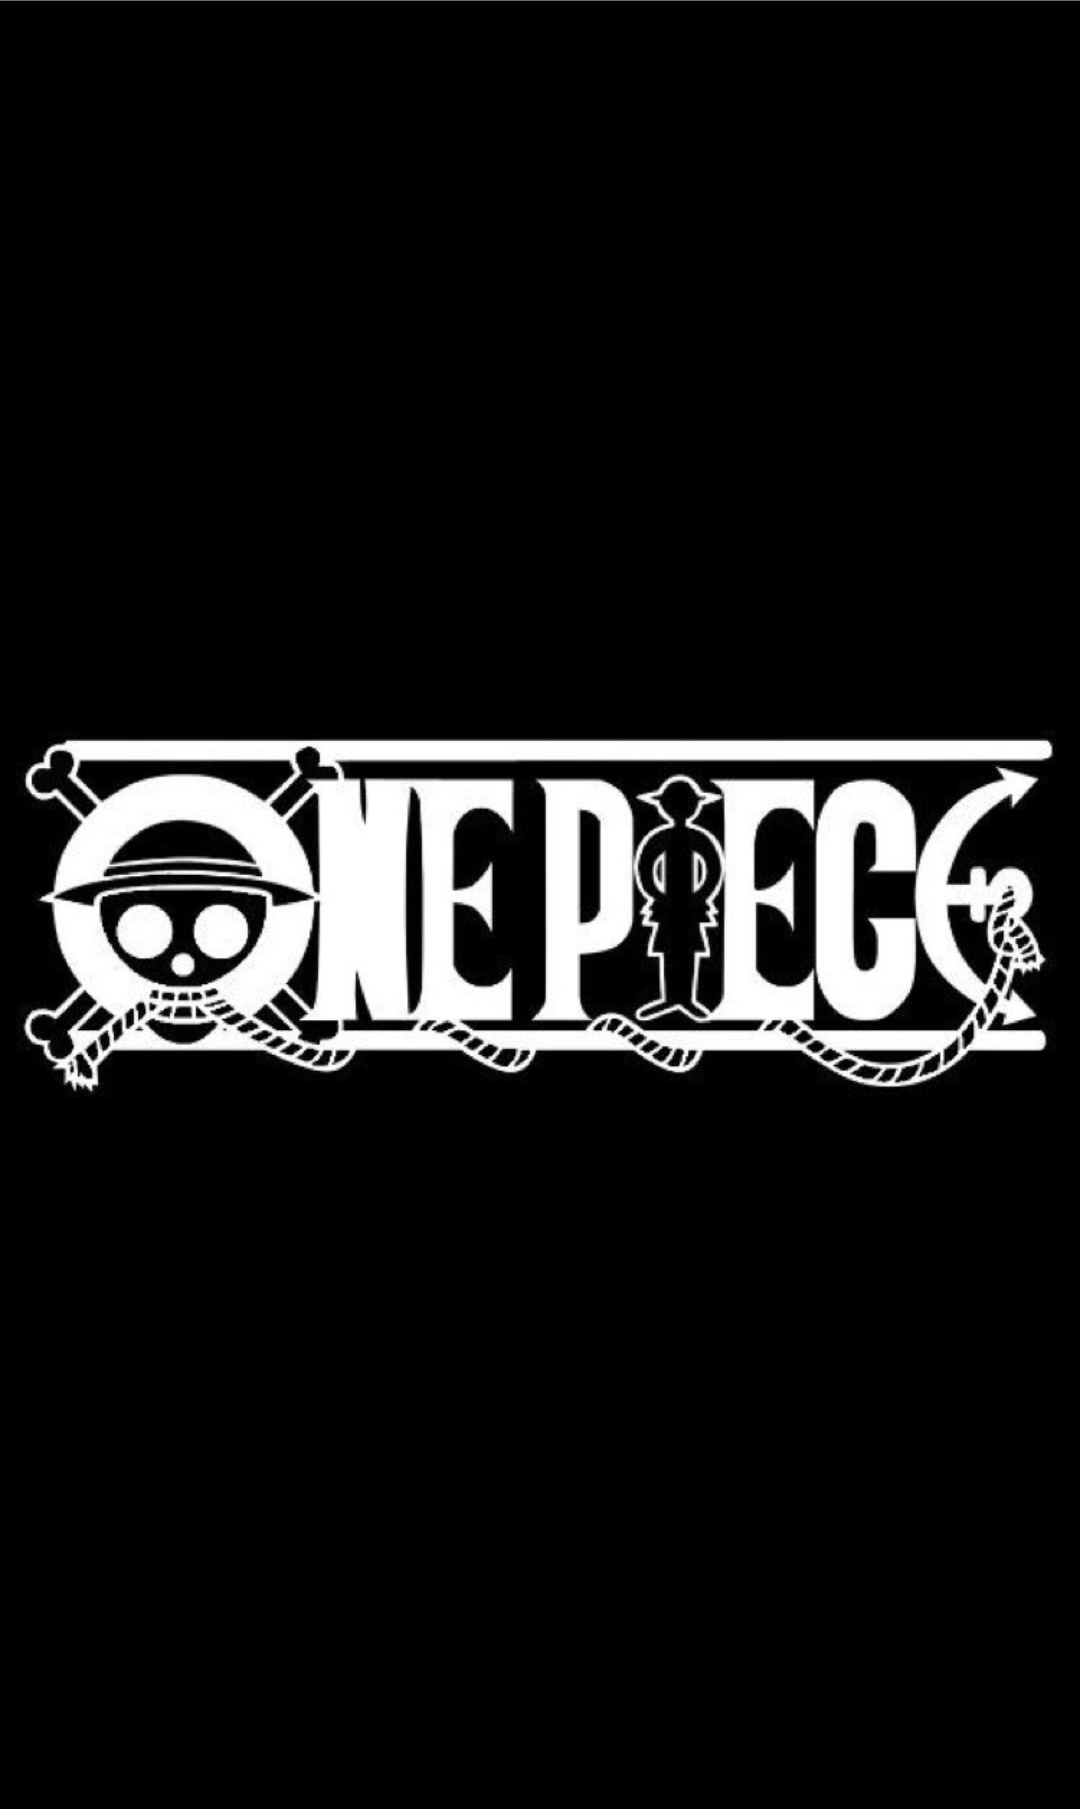 One Piece | Medium-hdcinema.vn